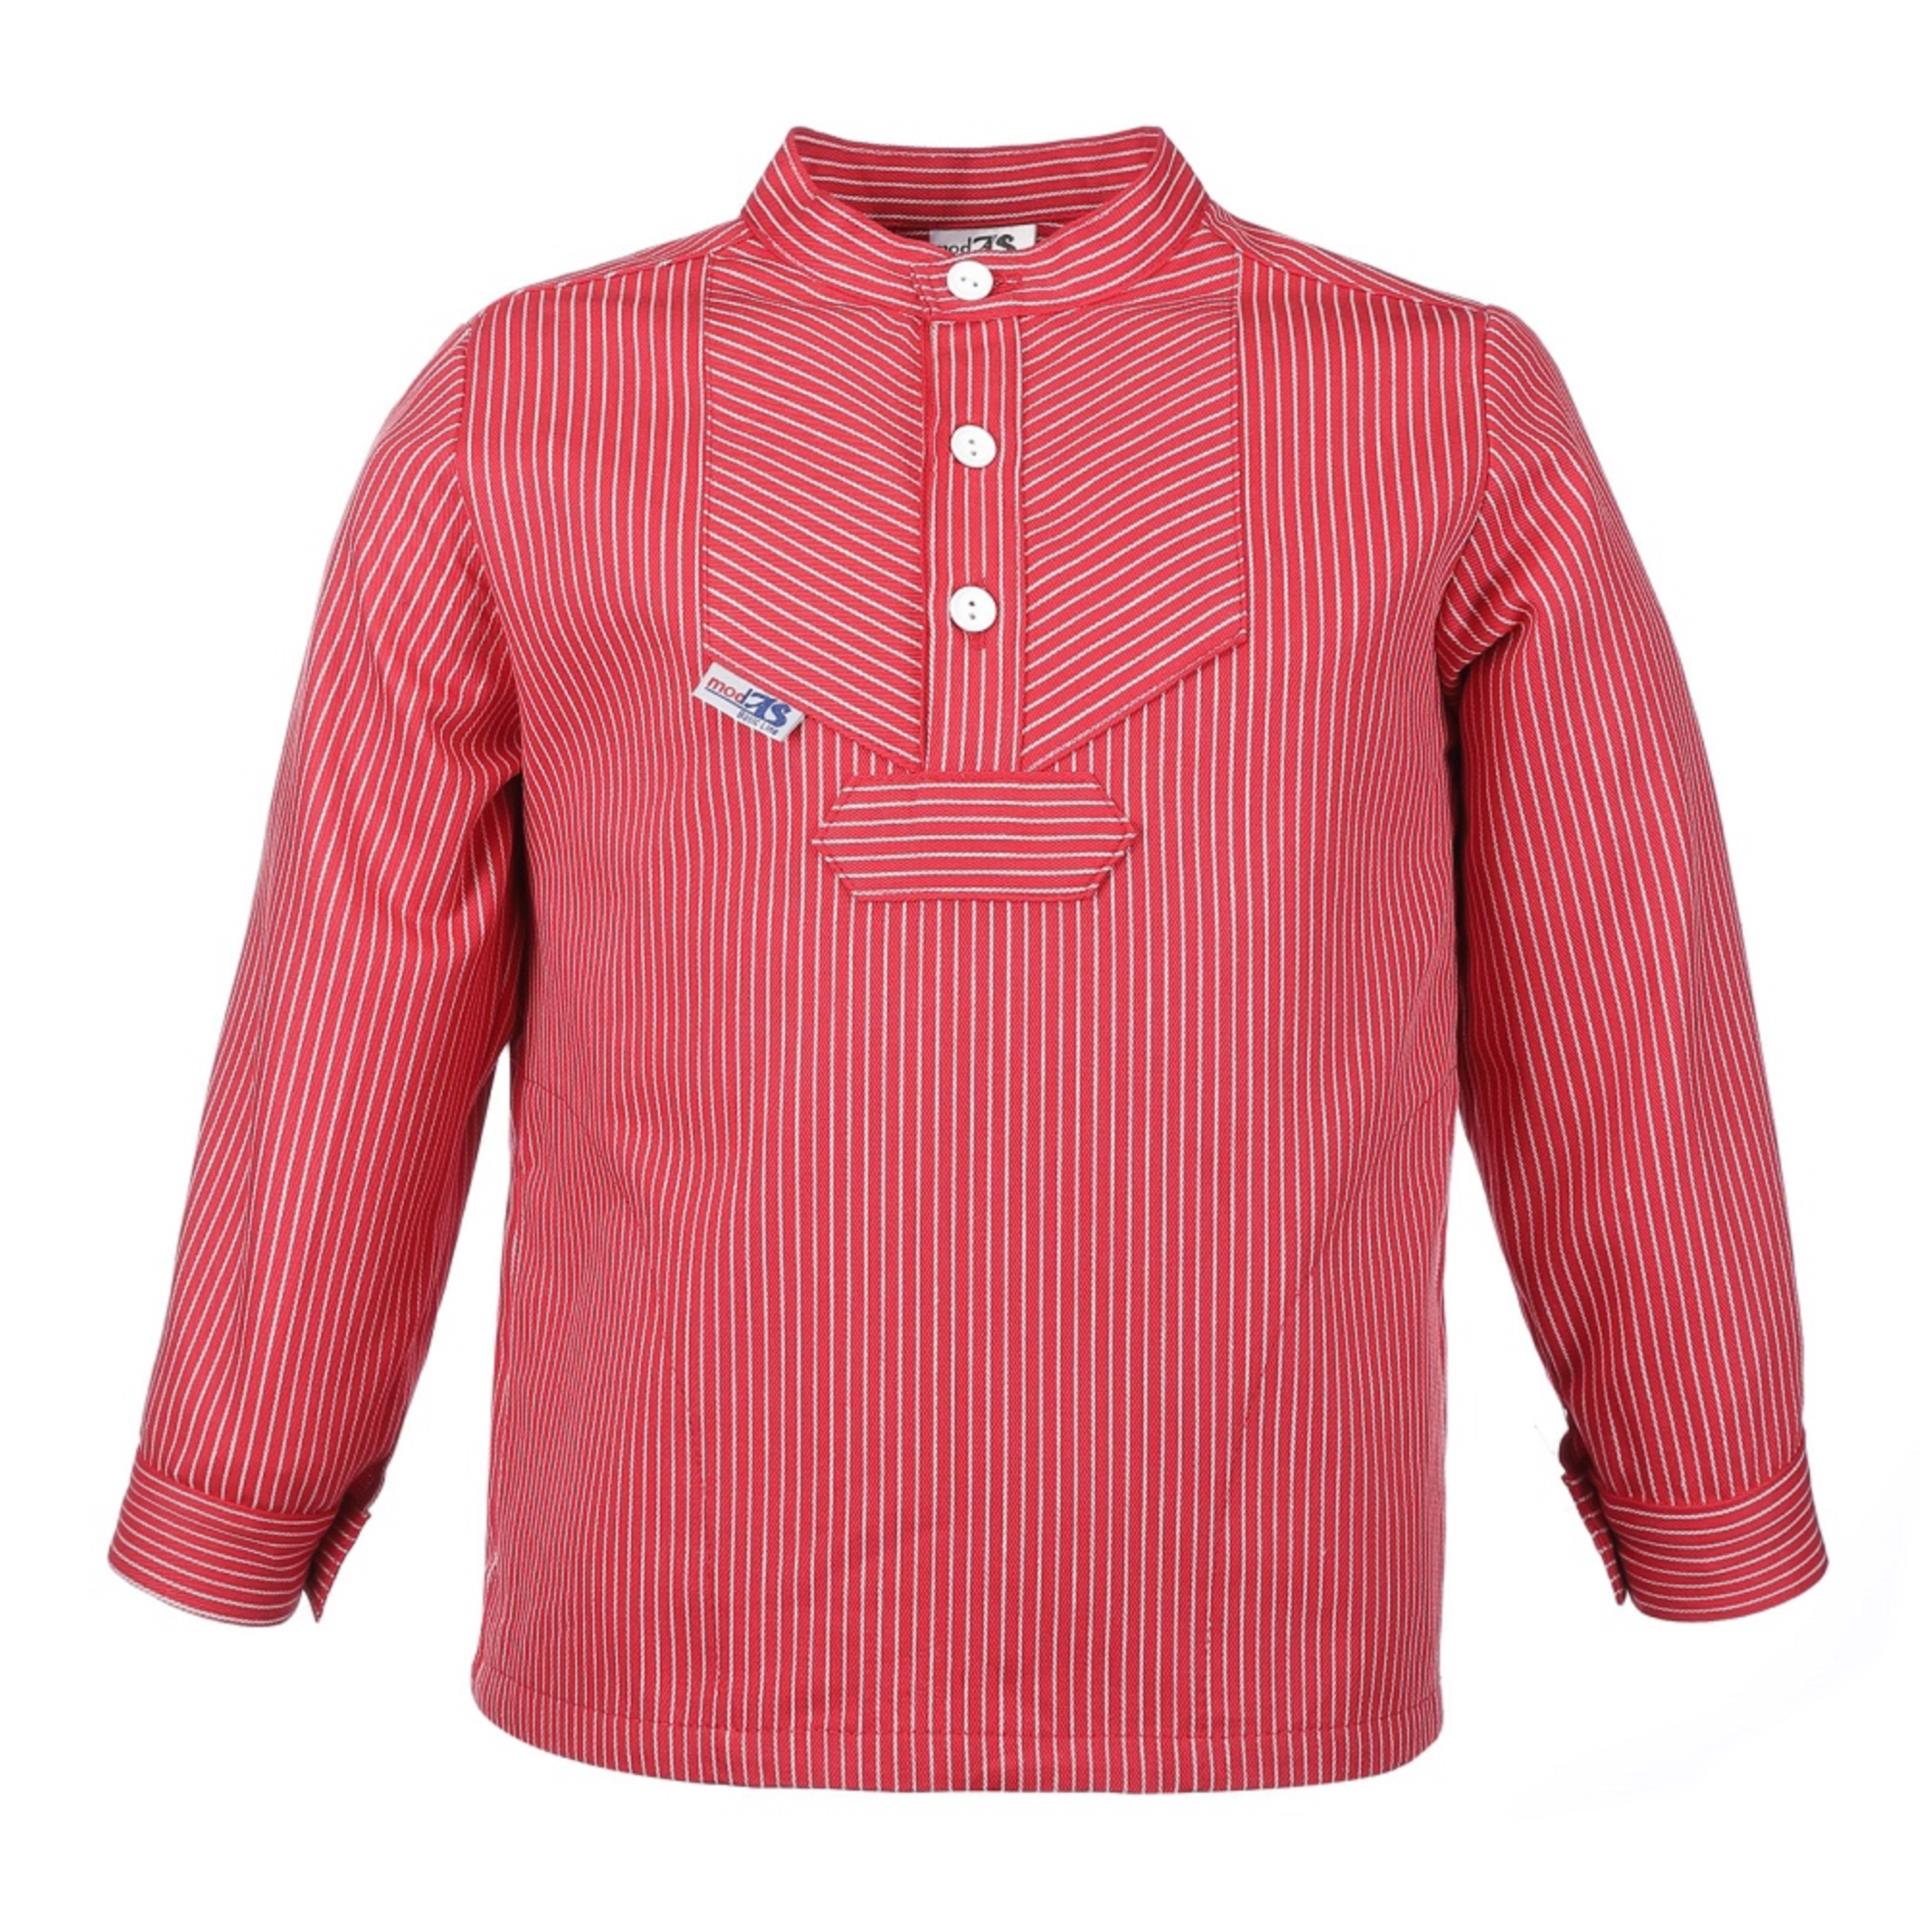 Modas Kinder-Fischerhemd BasicLine roter Streifen, 110/116